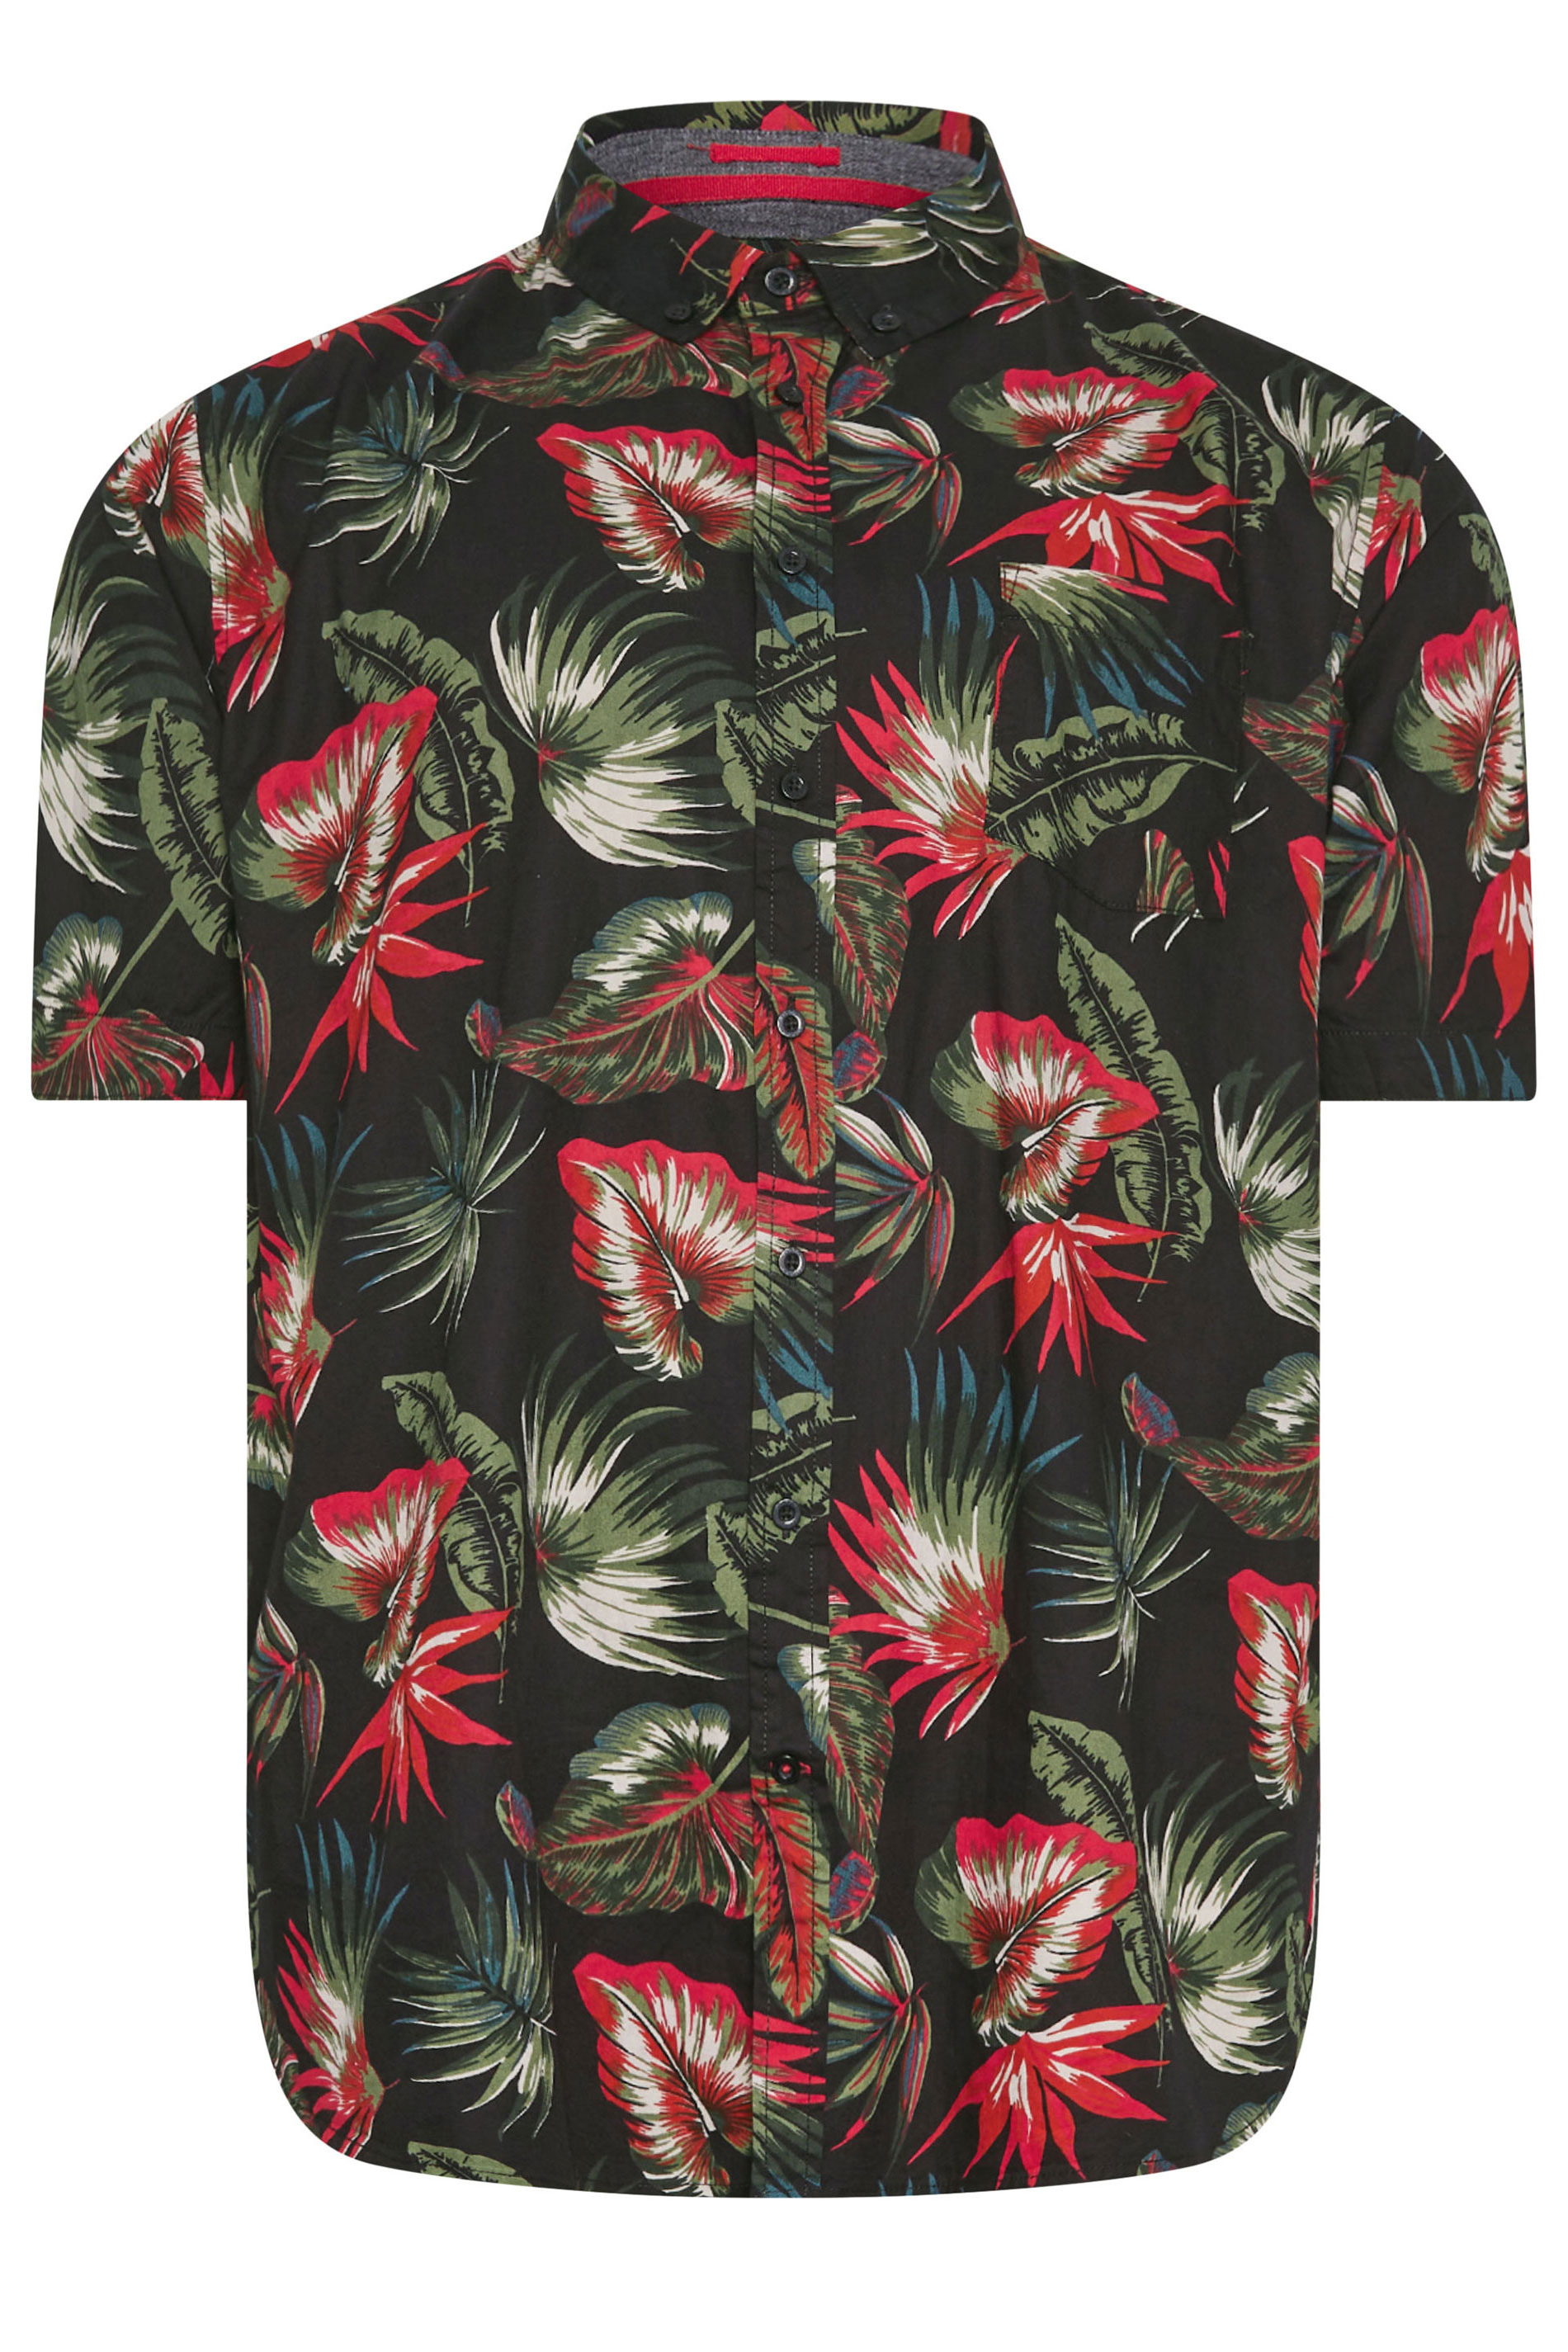 D555 Big & Tall Black Hawaiian Print Short Sleeve Shirt | BadRhino 3